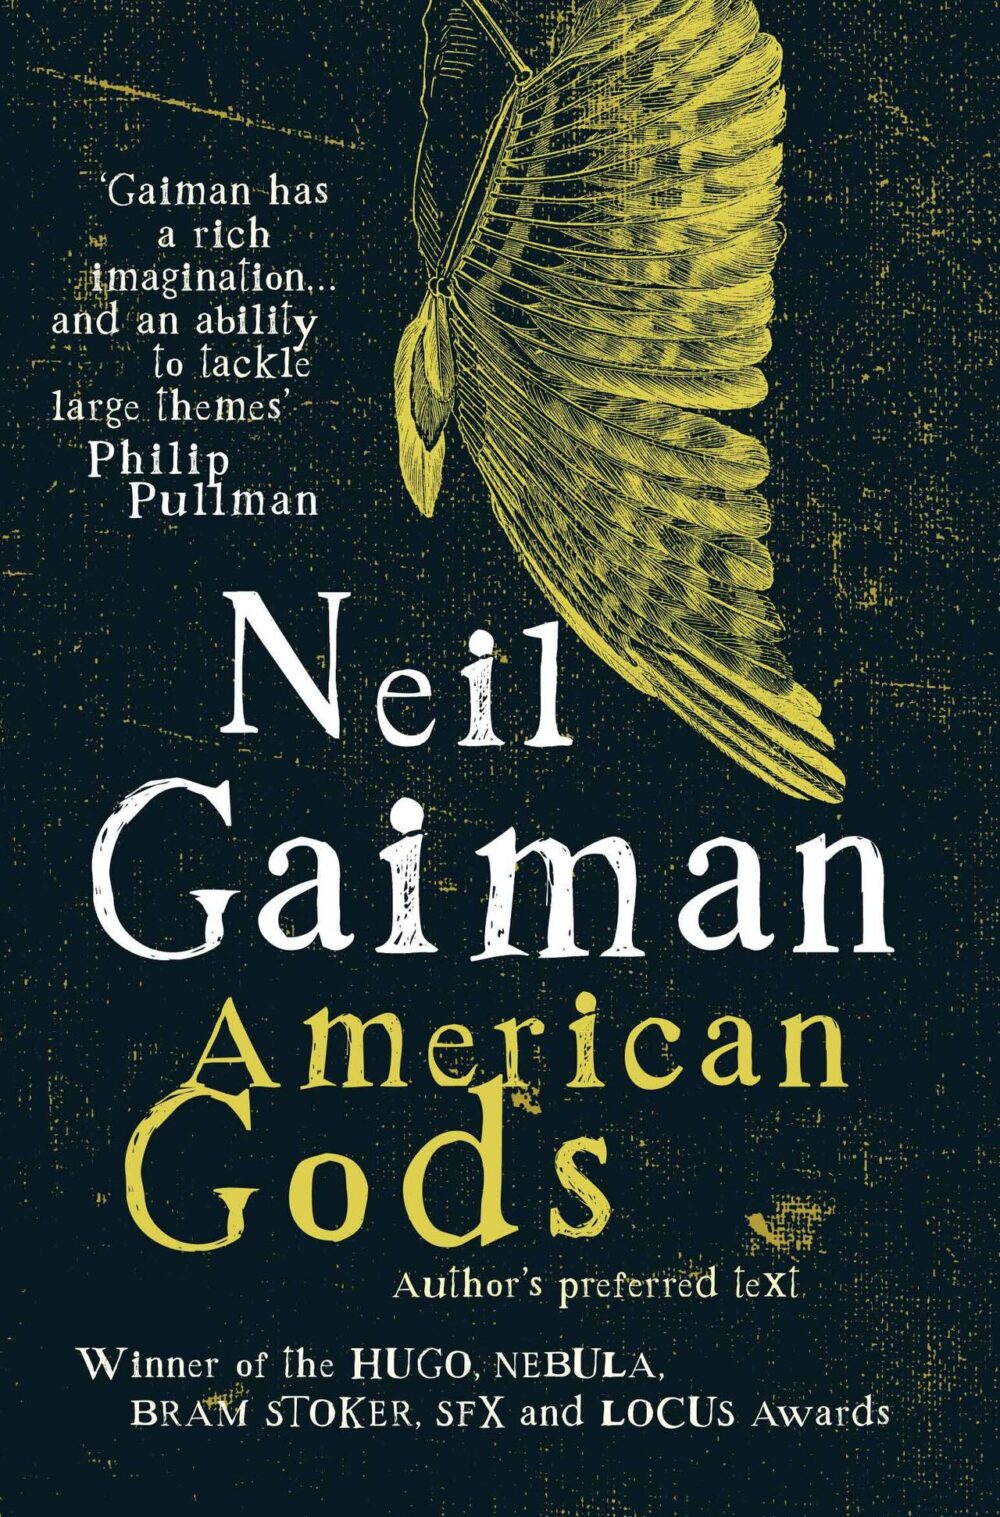 Hinh anh bia cuon sach American Gods e1607101295719 - Neil Gaiman: Thứ phép màu diệu kỳ lấp lánh như sao